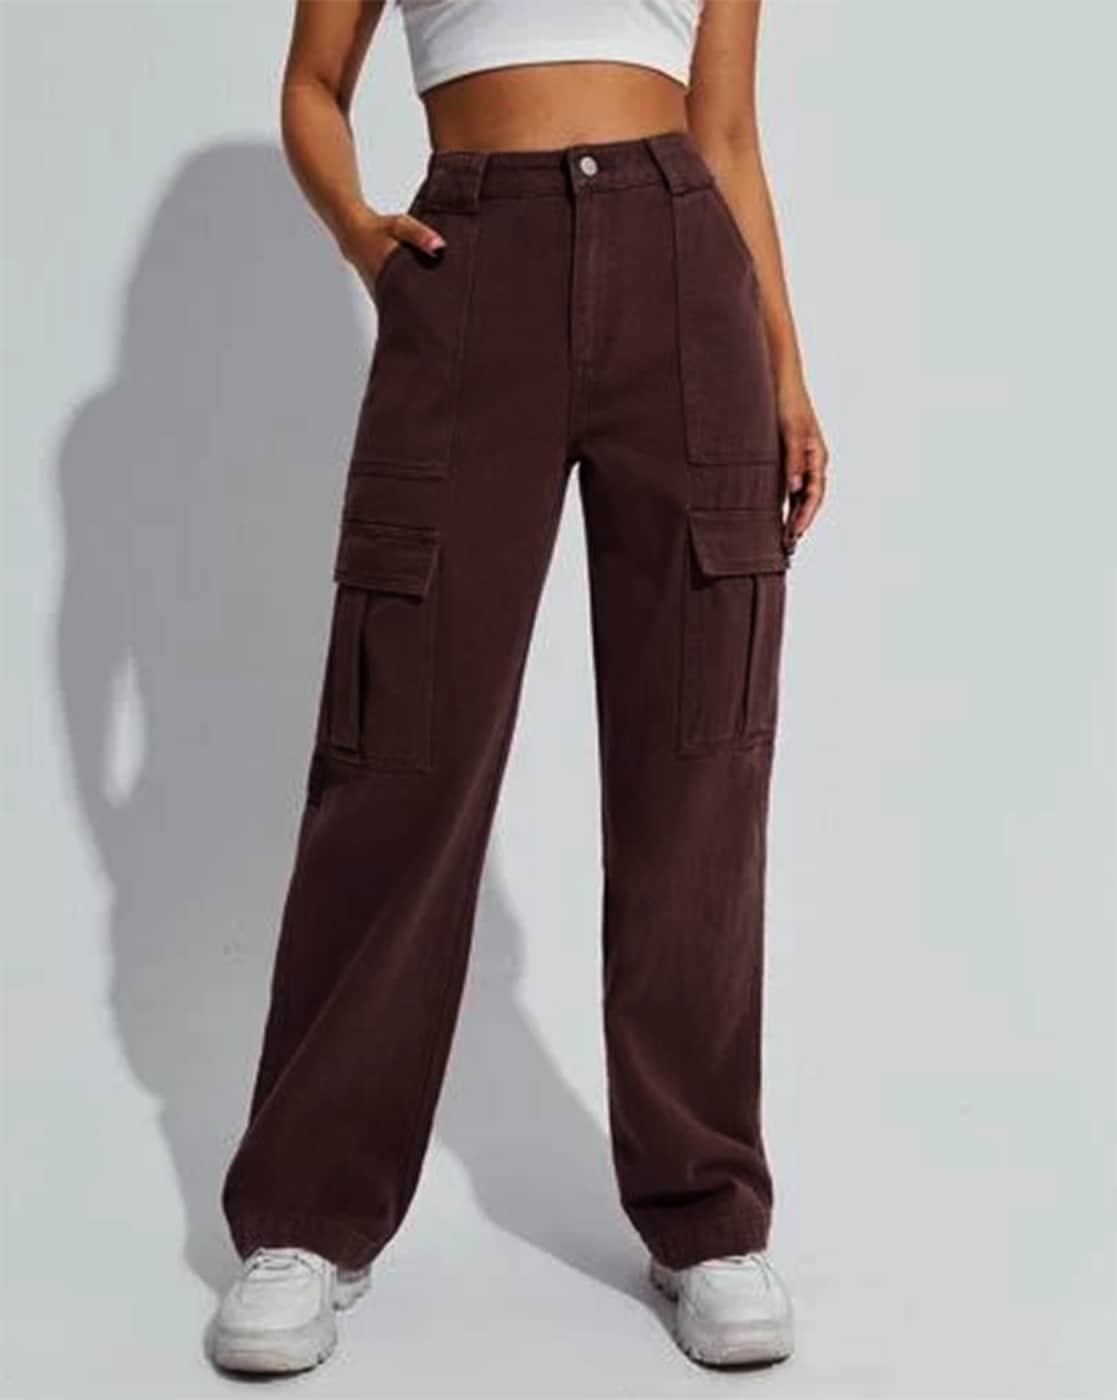 Dark Brown Pants - Cute Vegan Leather Pants - Wide-Leg Pants - Lulus